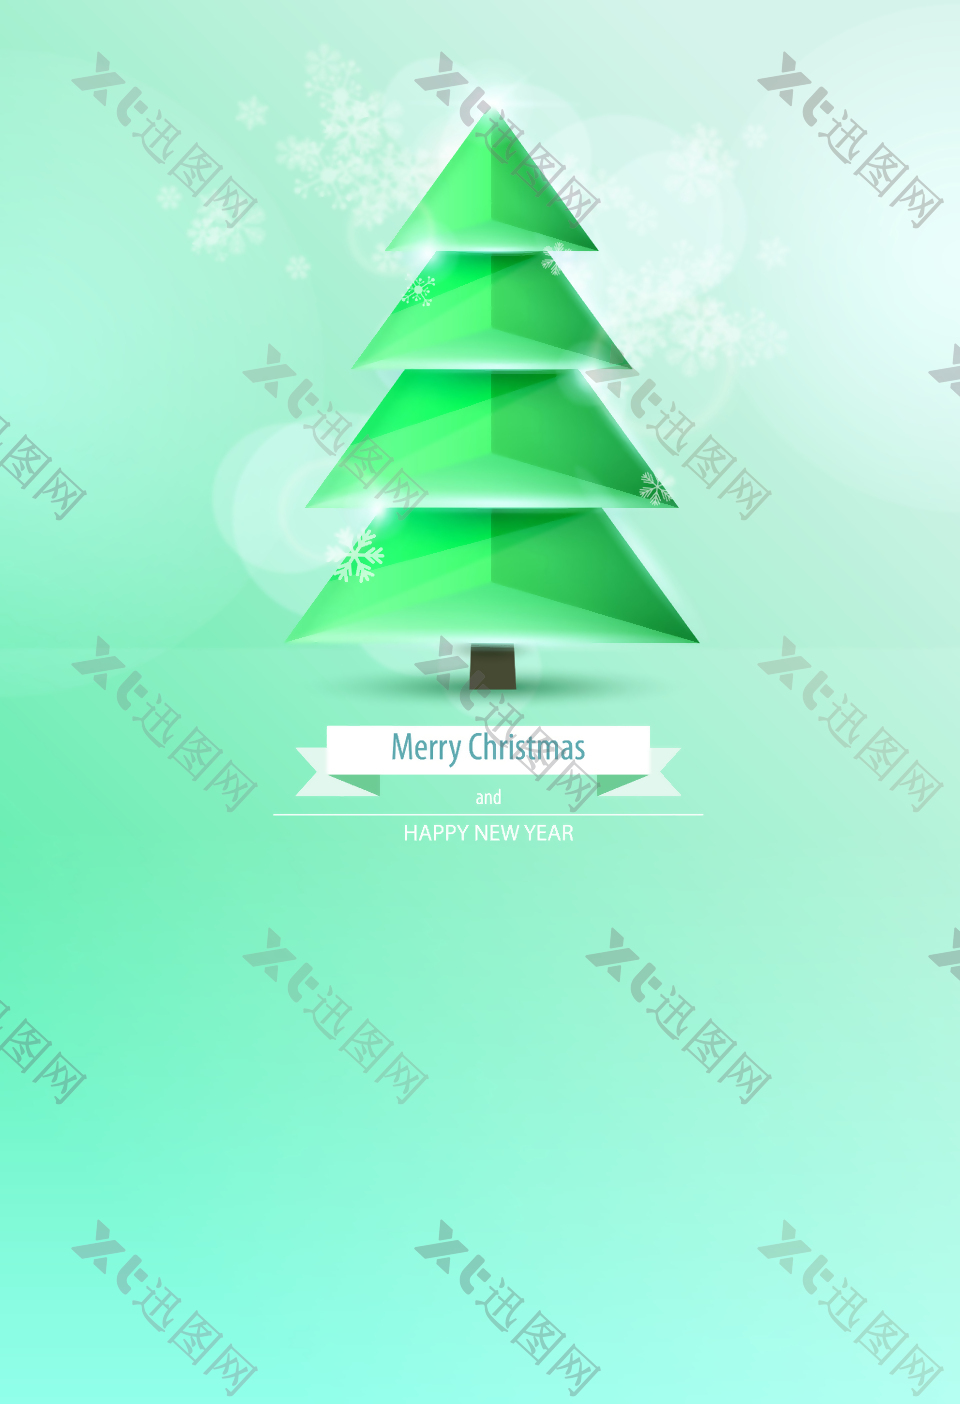 立体光圈圣诞树海报背景素材